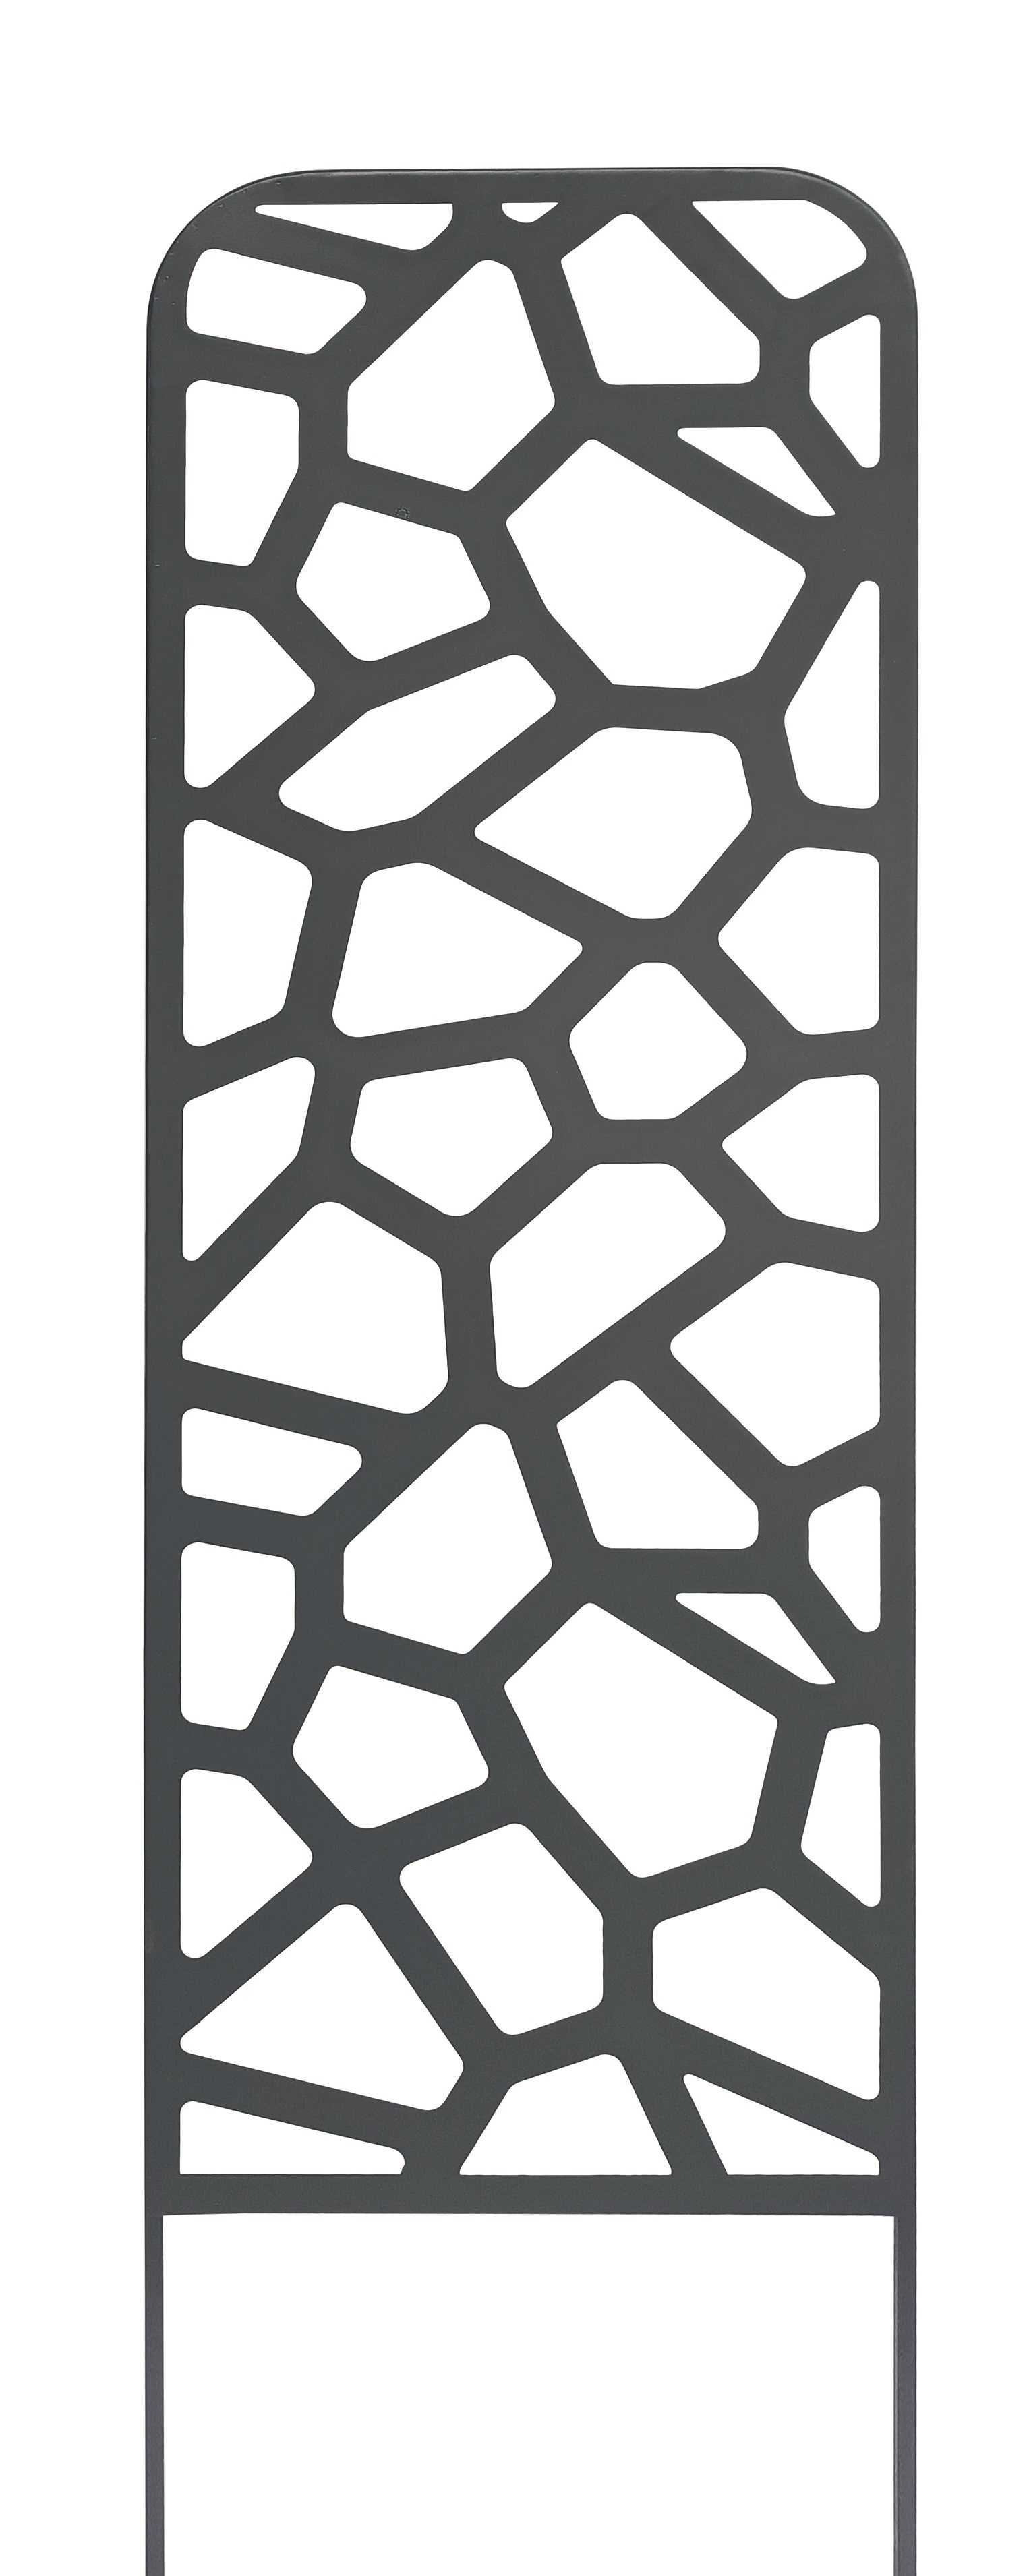 Fém növényfuttató dekoratív kő motívumokkal Stone trellis fekete 0,33x1,2 m